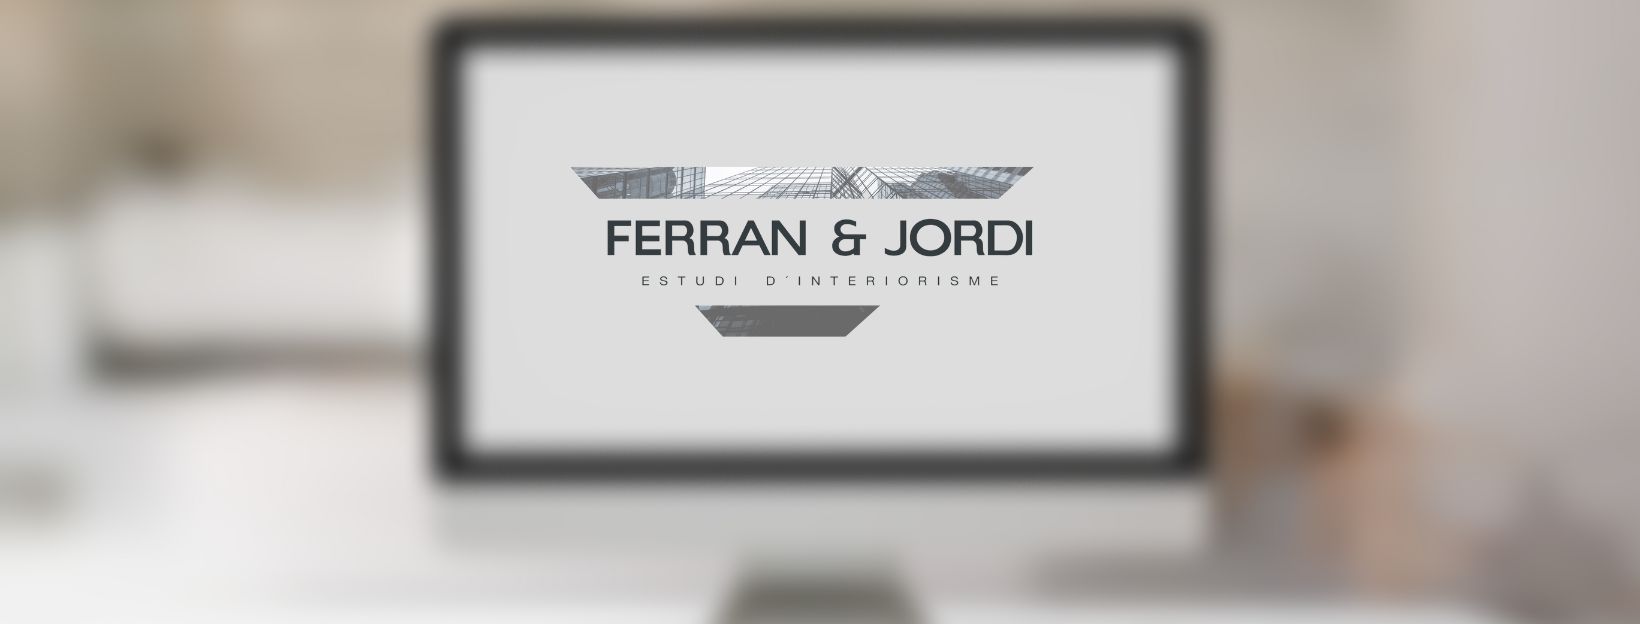 SEO para la página web de Ferran & Jordi